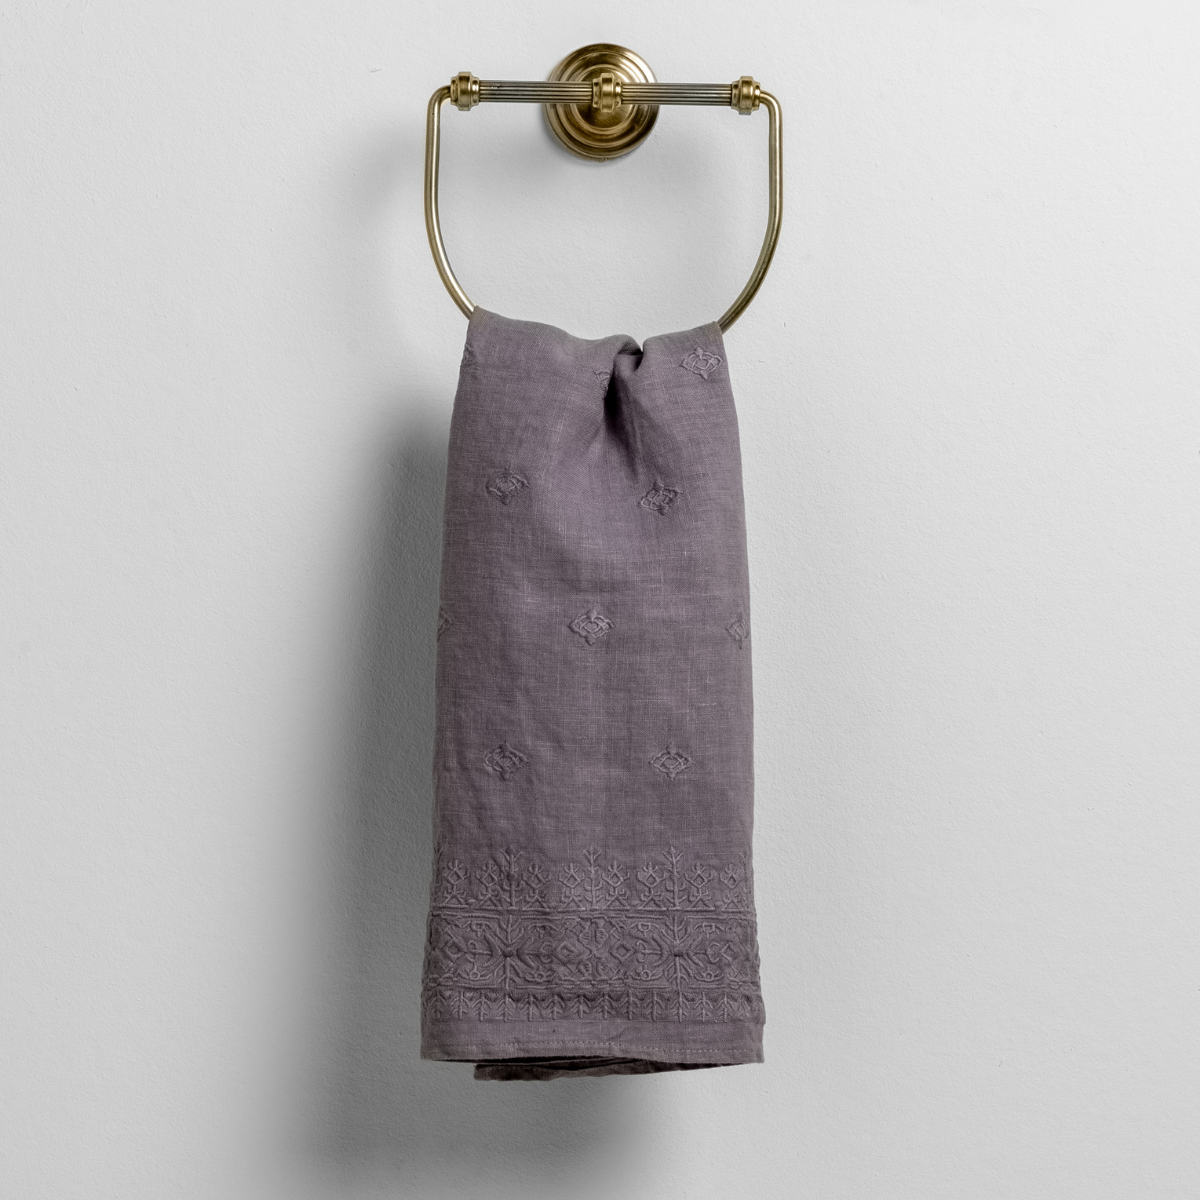 Hand Towels: Bathroom Guest Towels & Hanging Towels